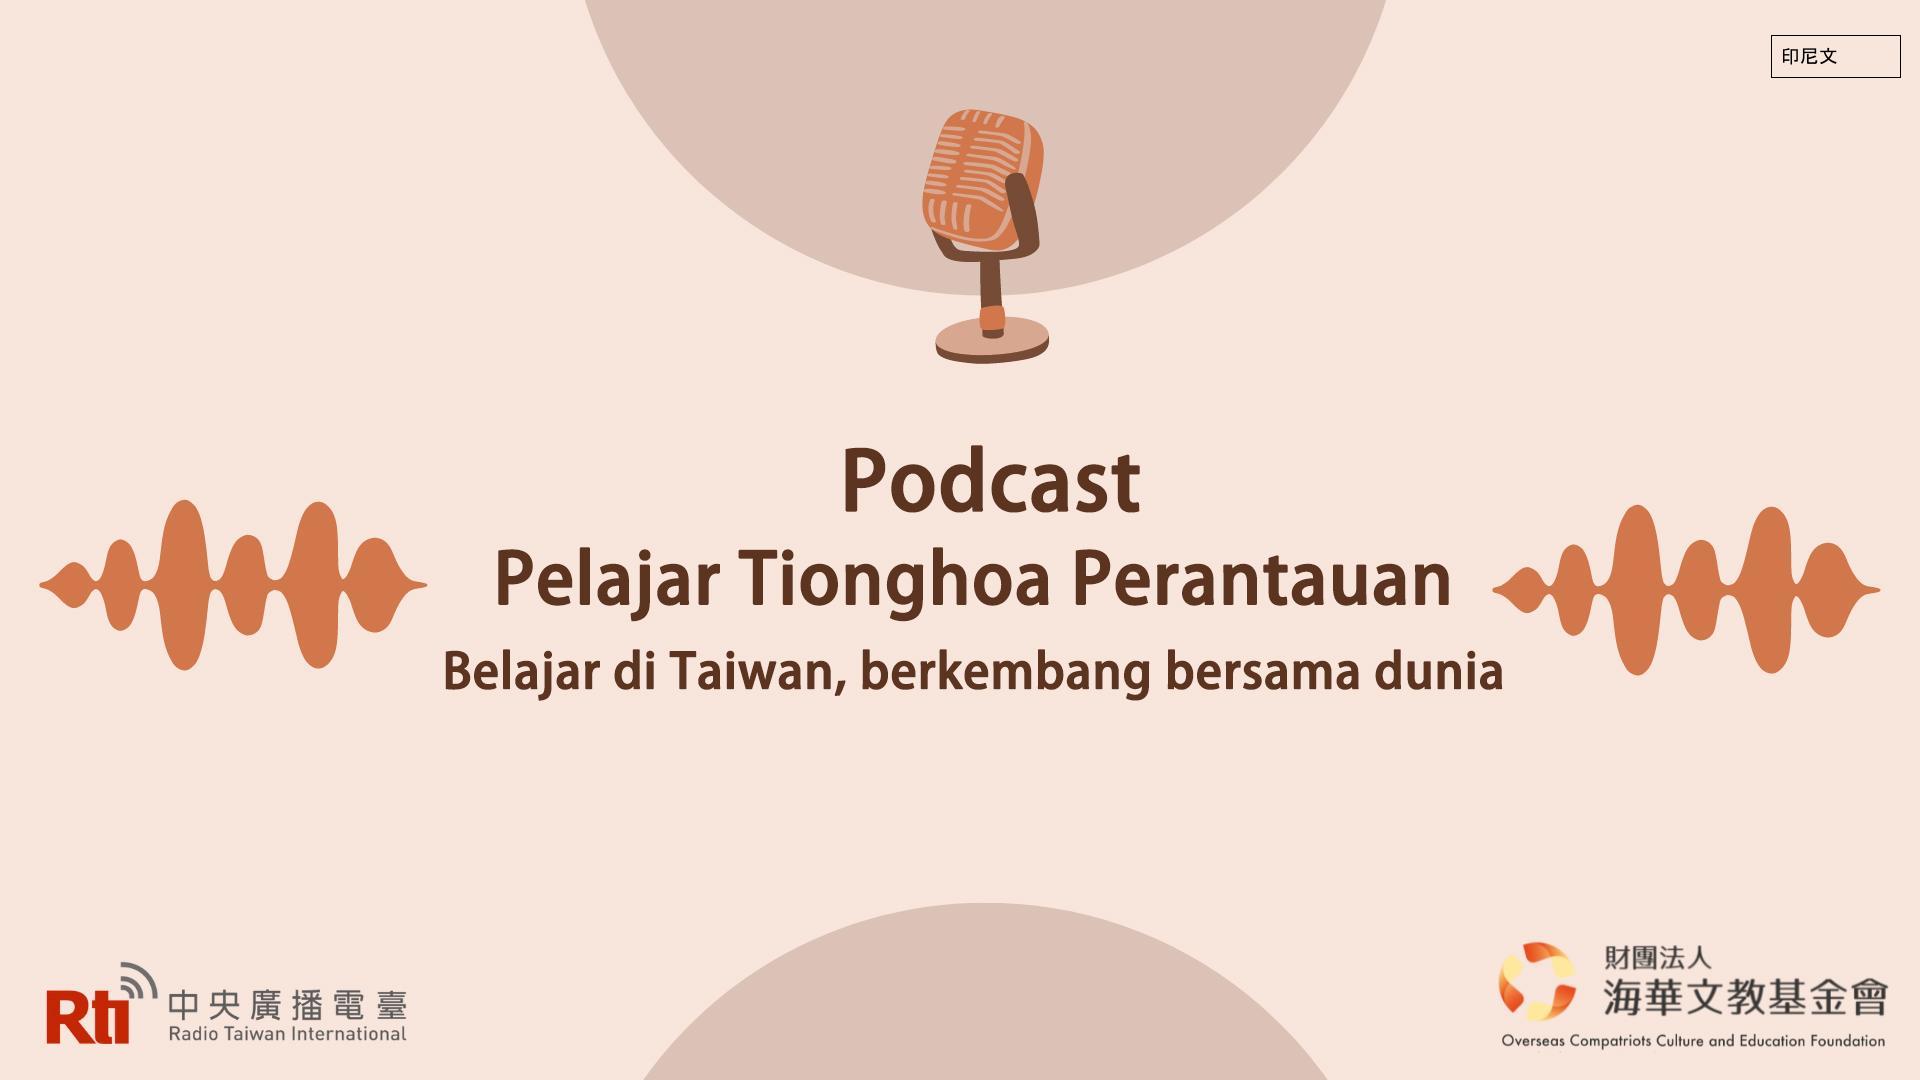 Podcast Pelajar Tionghoa Perantauan